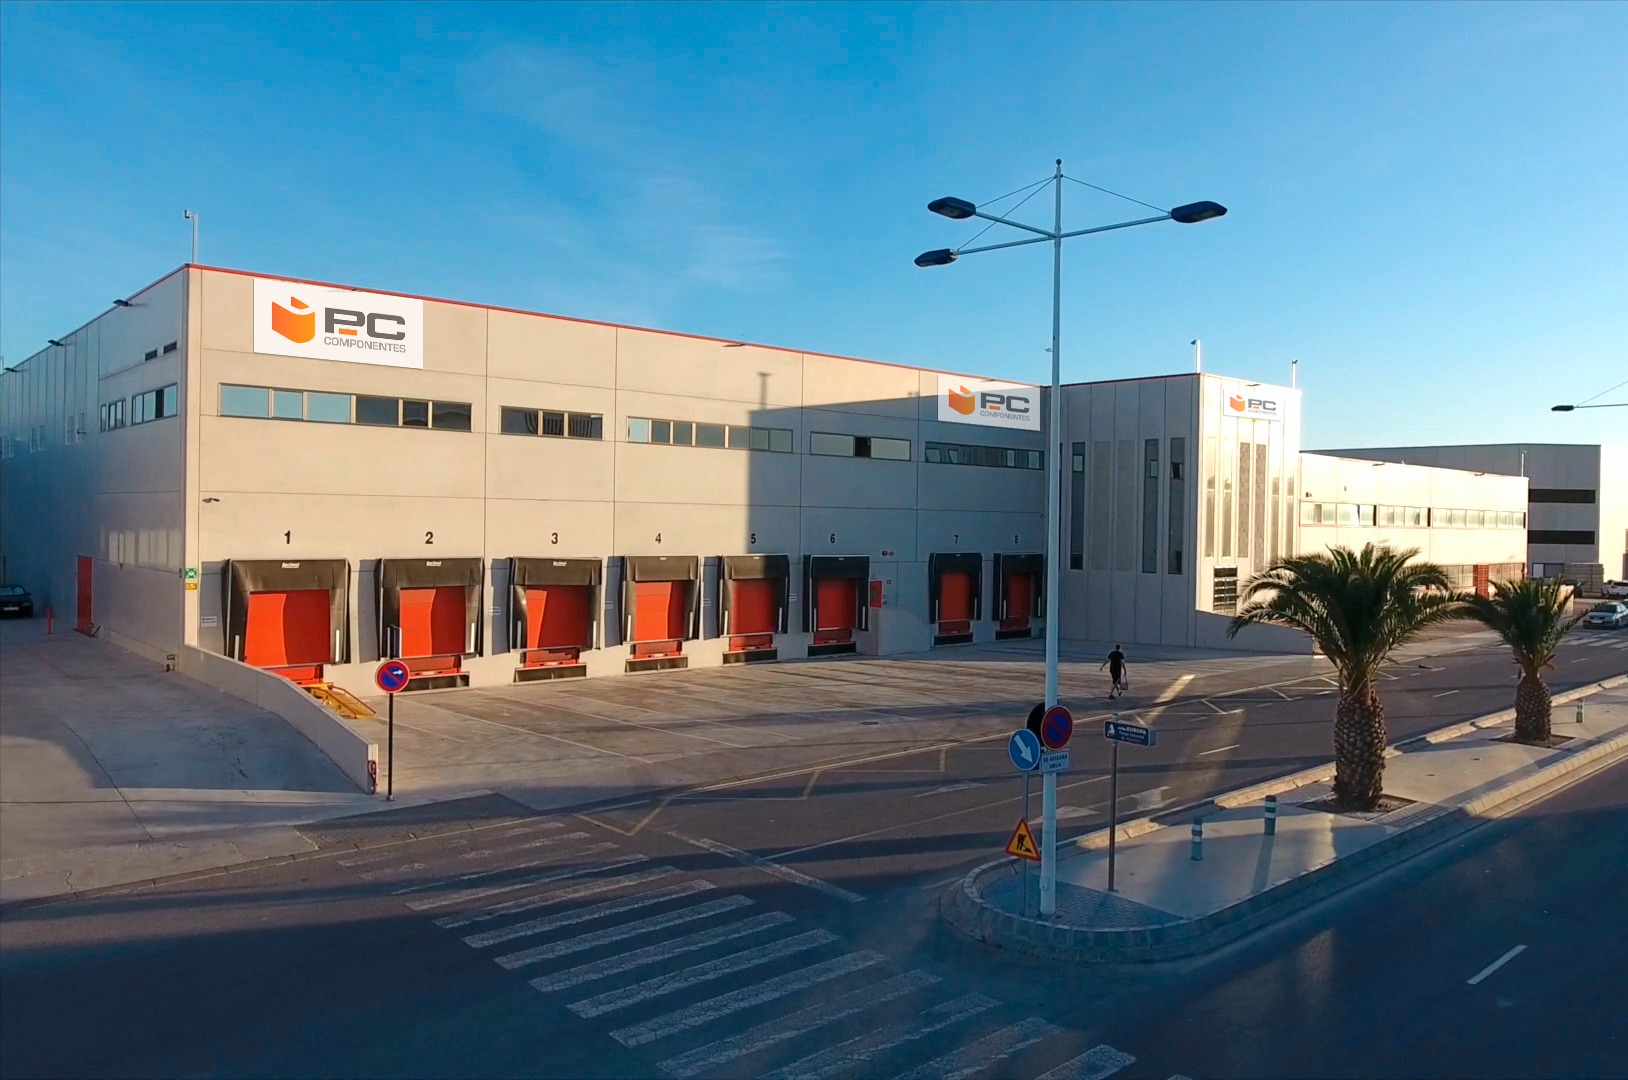 Instalaciones de PcComponentes en Murcia. 